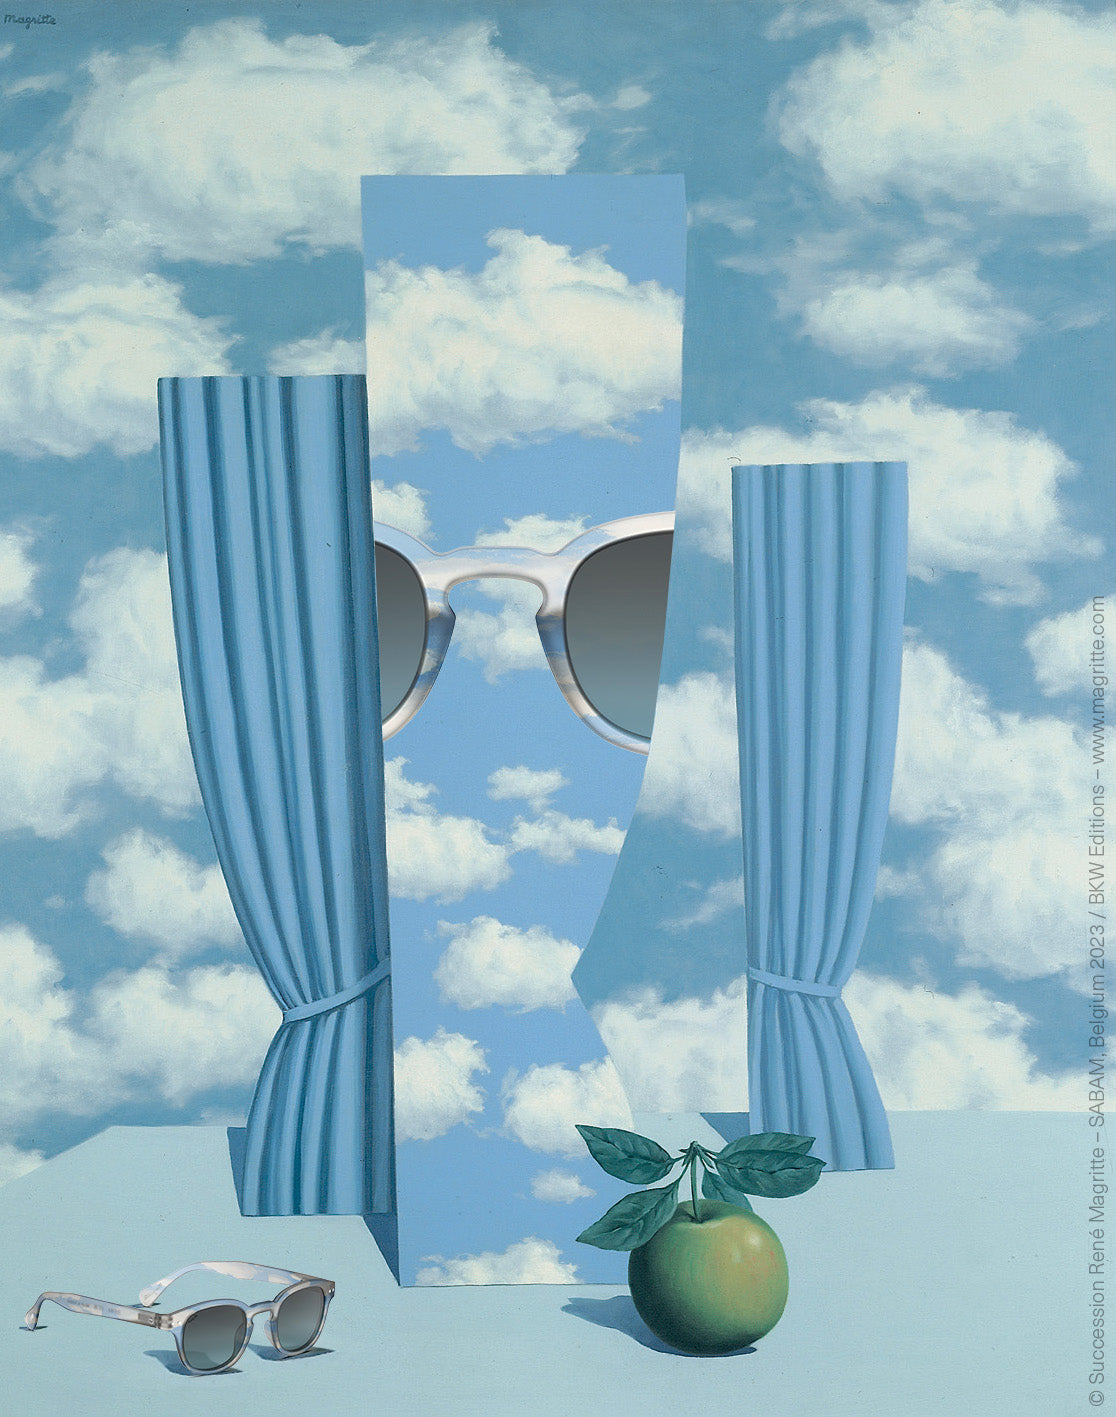 IZIPIZI sluneční brýle – limitovaná edice Magritte, mraky / clouds